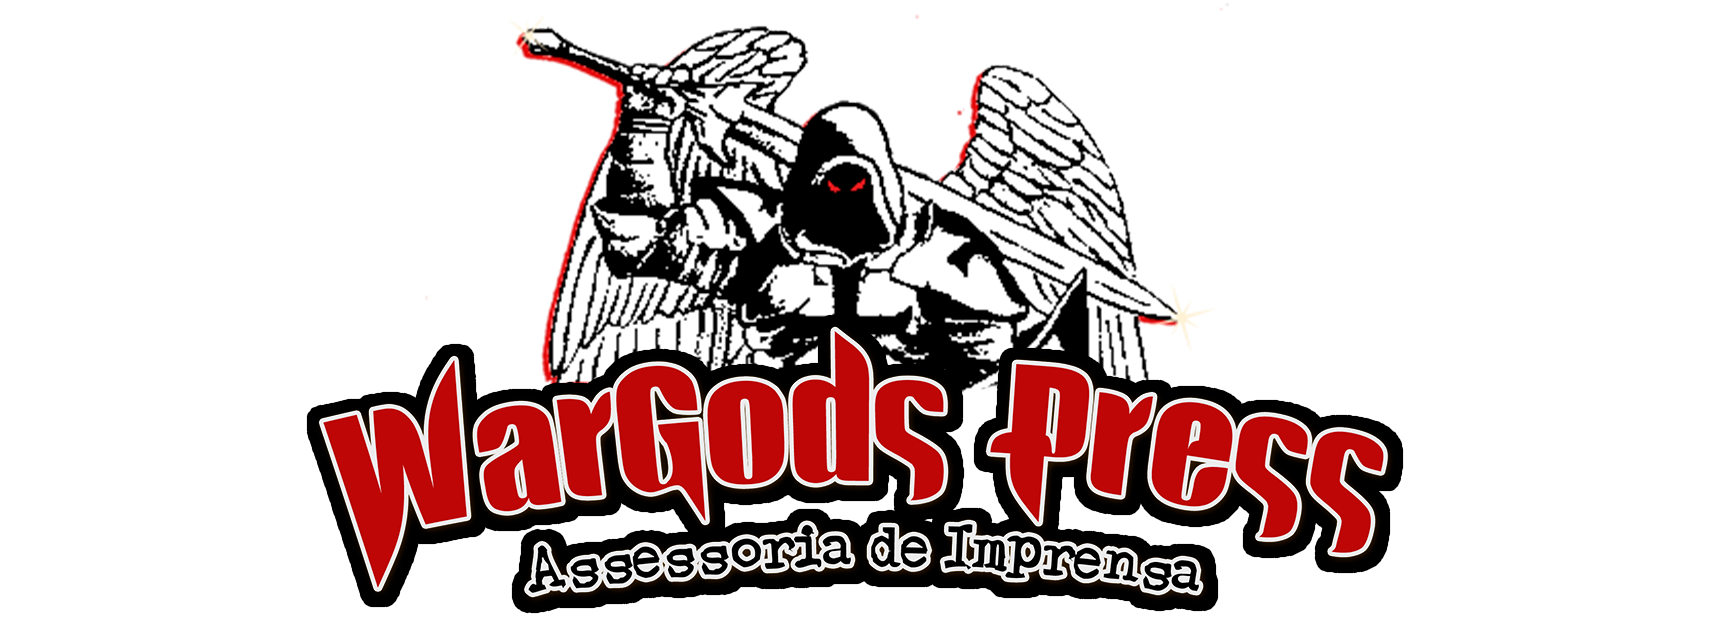 WARGODS PRESS || Official Website